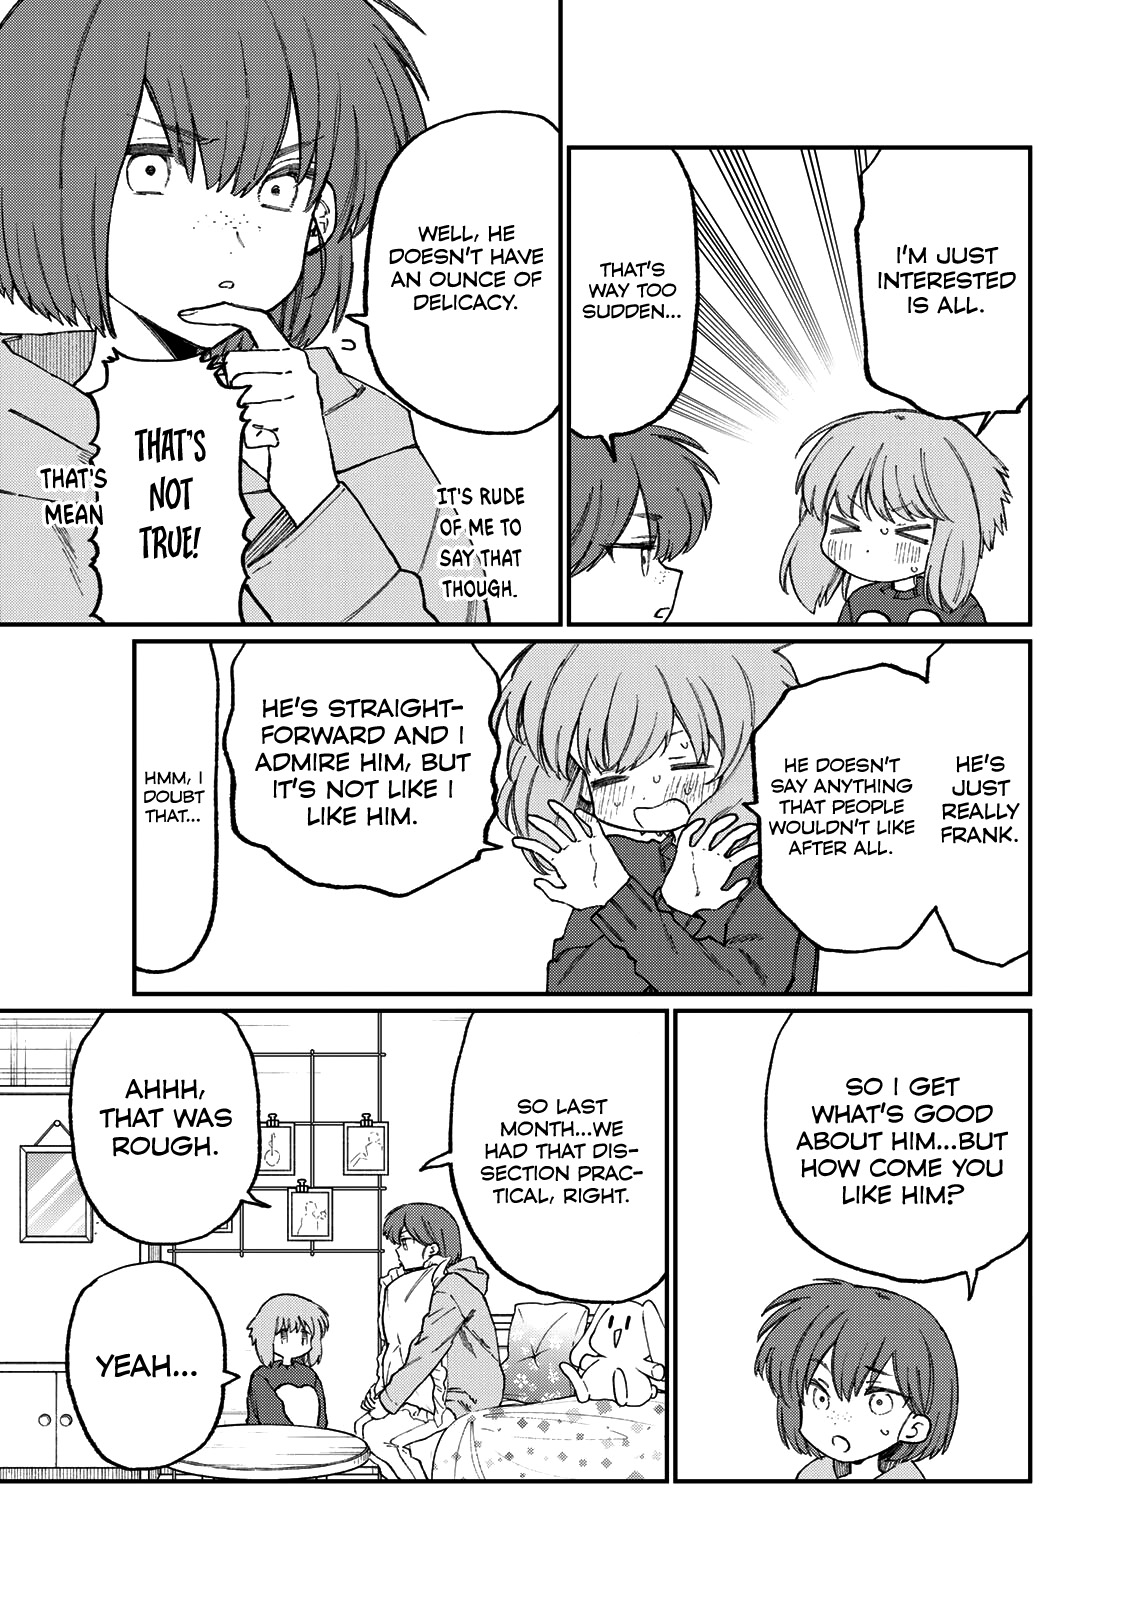 Shikimori's Not Just A Cutie - Page 4